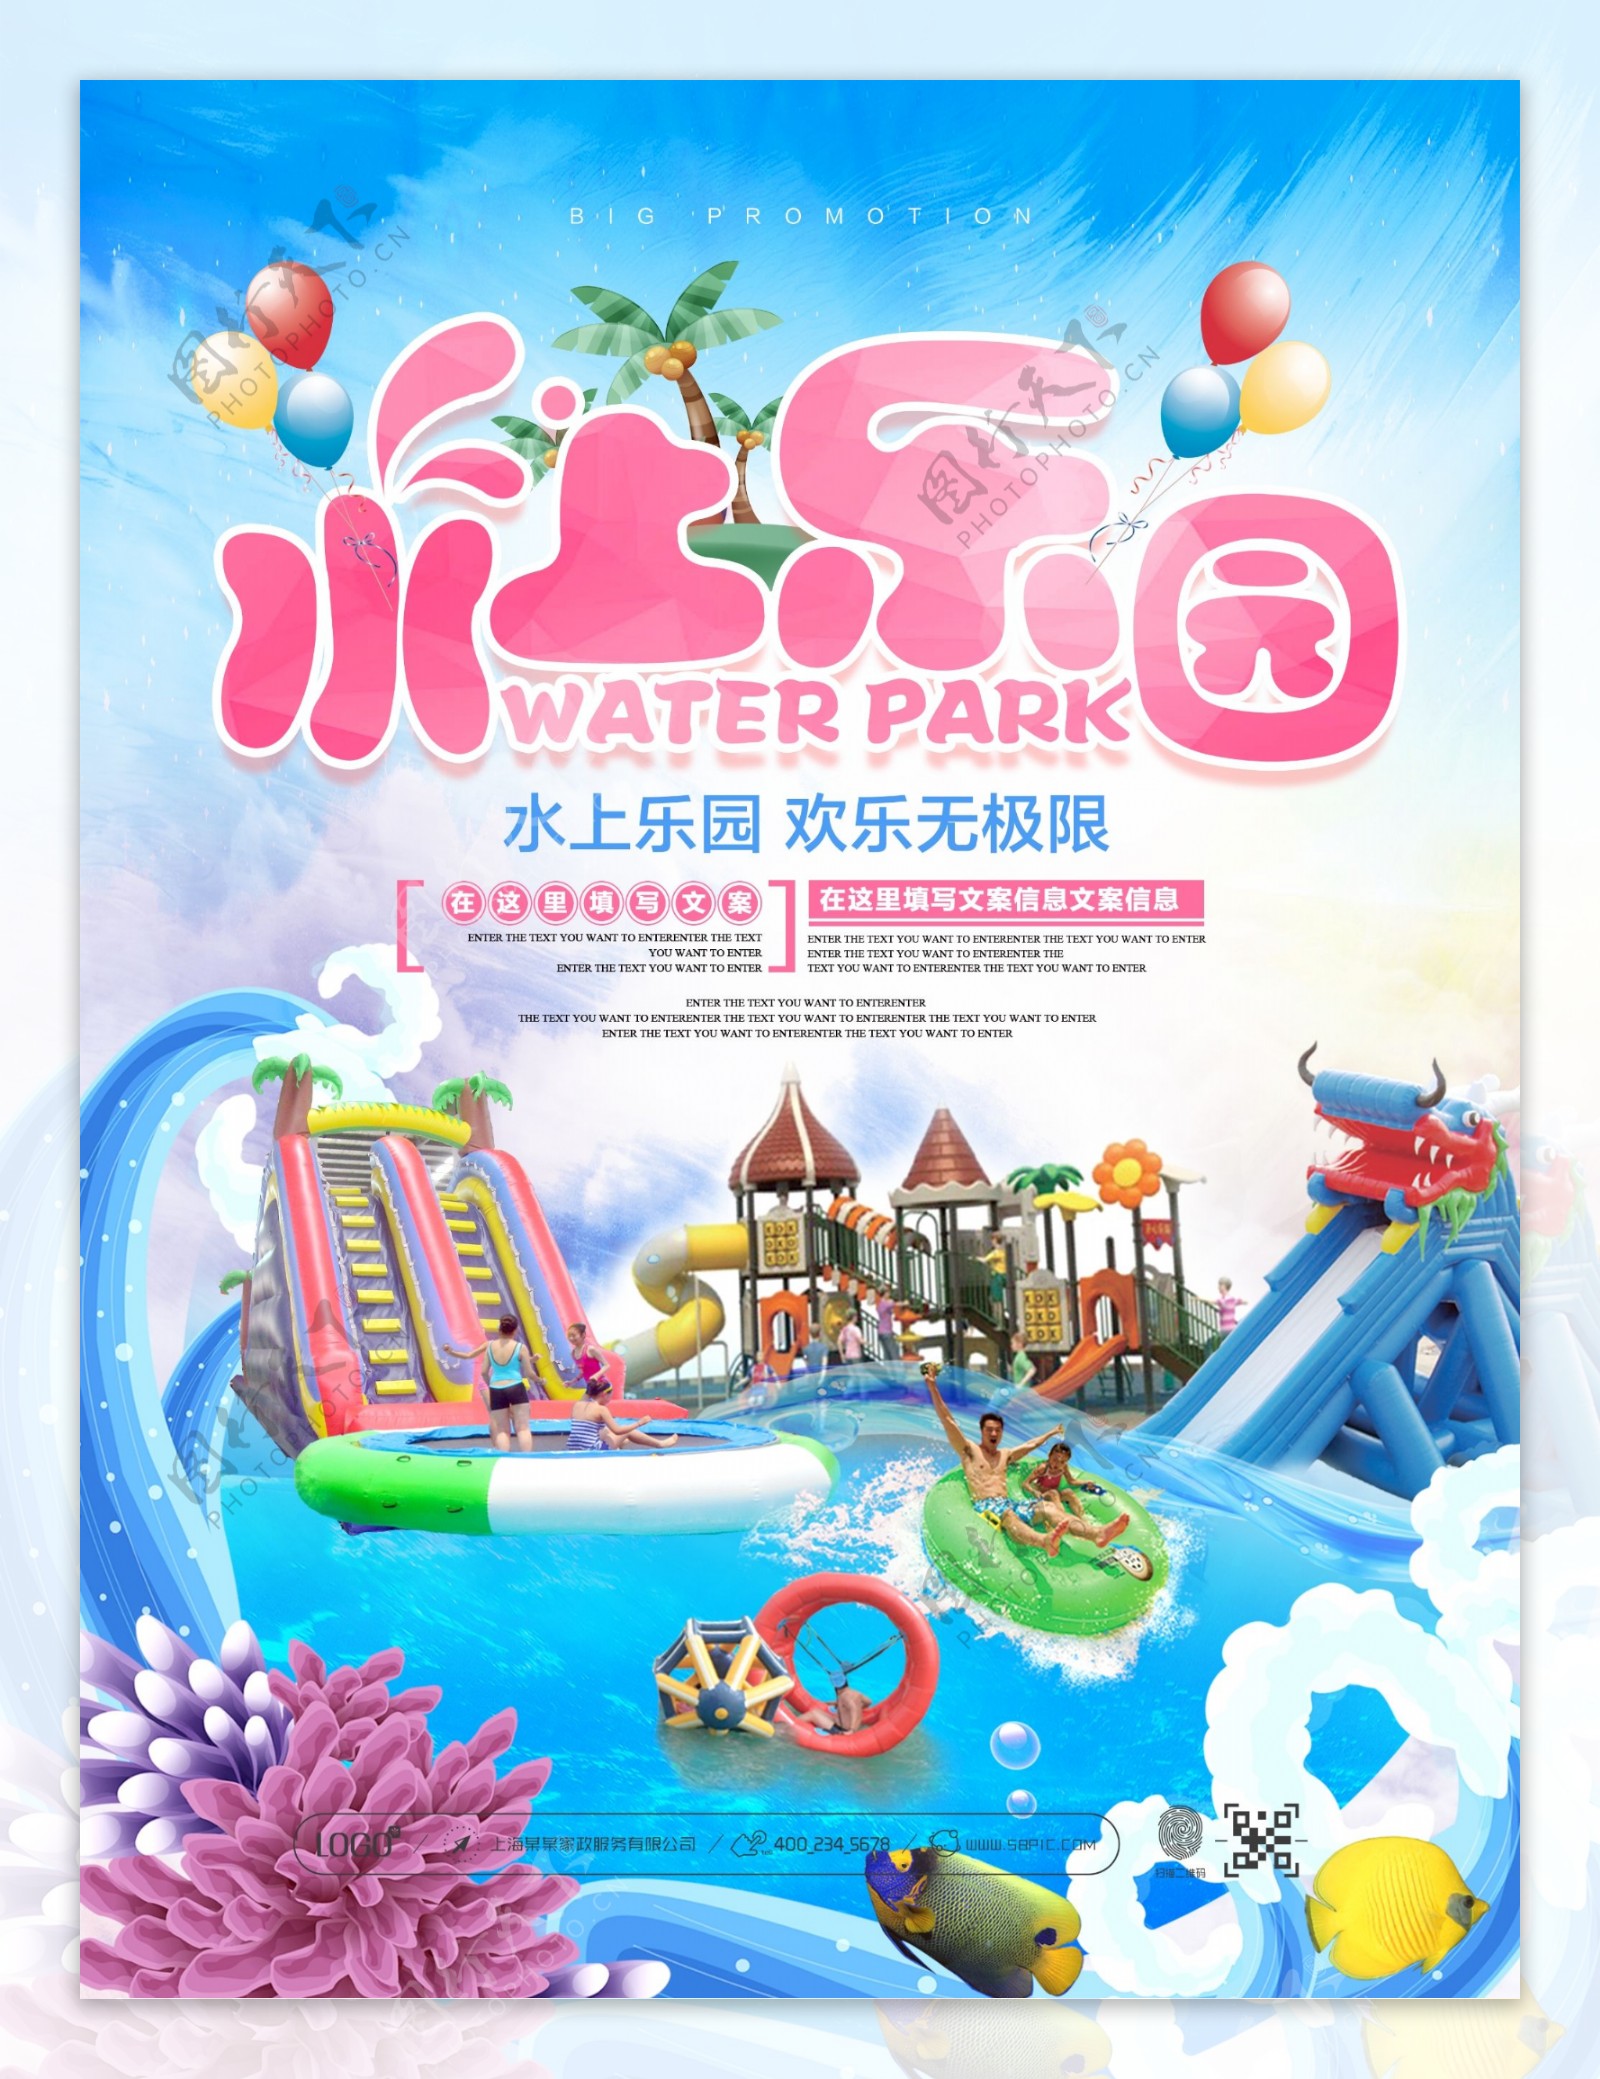 夏季清新蓝色水上乐园宣传促销海报